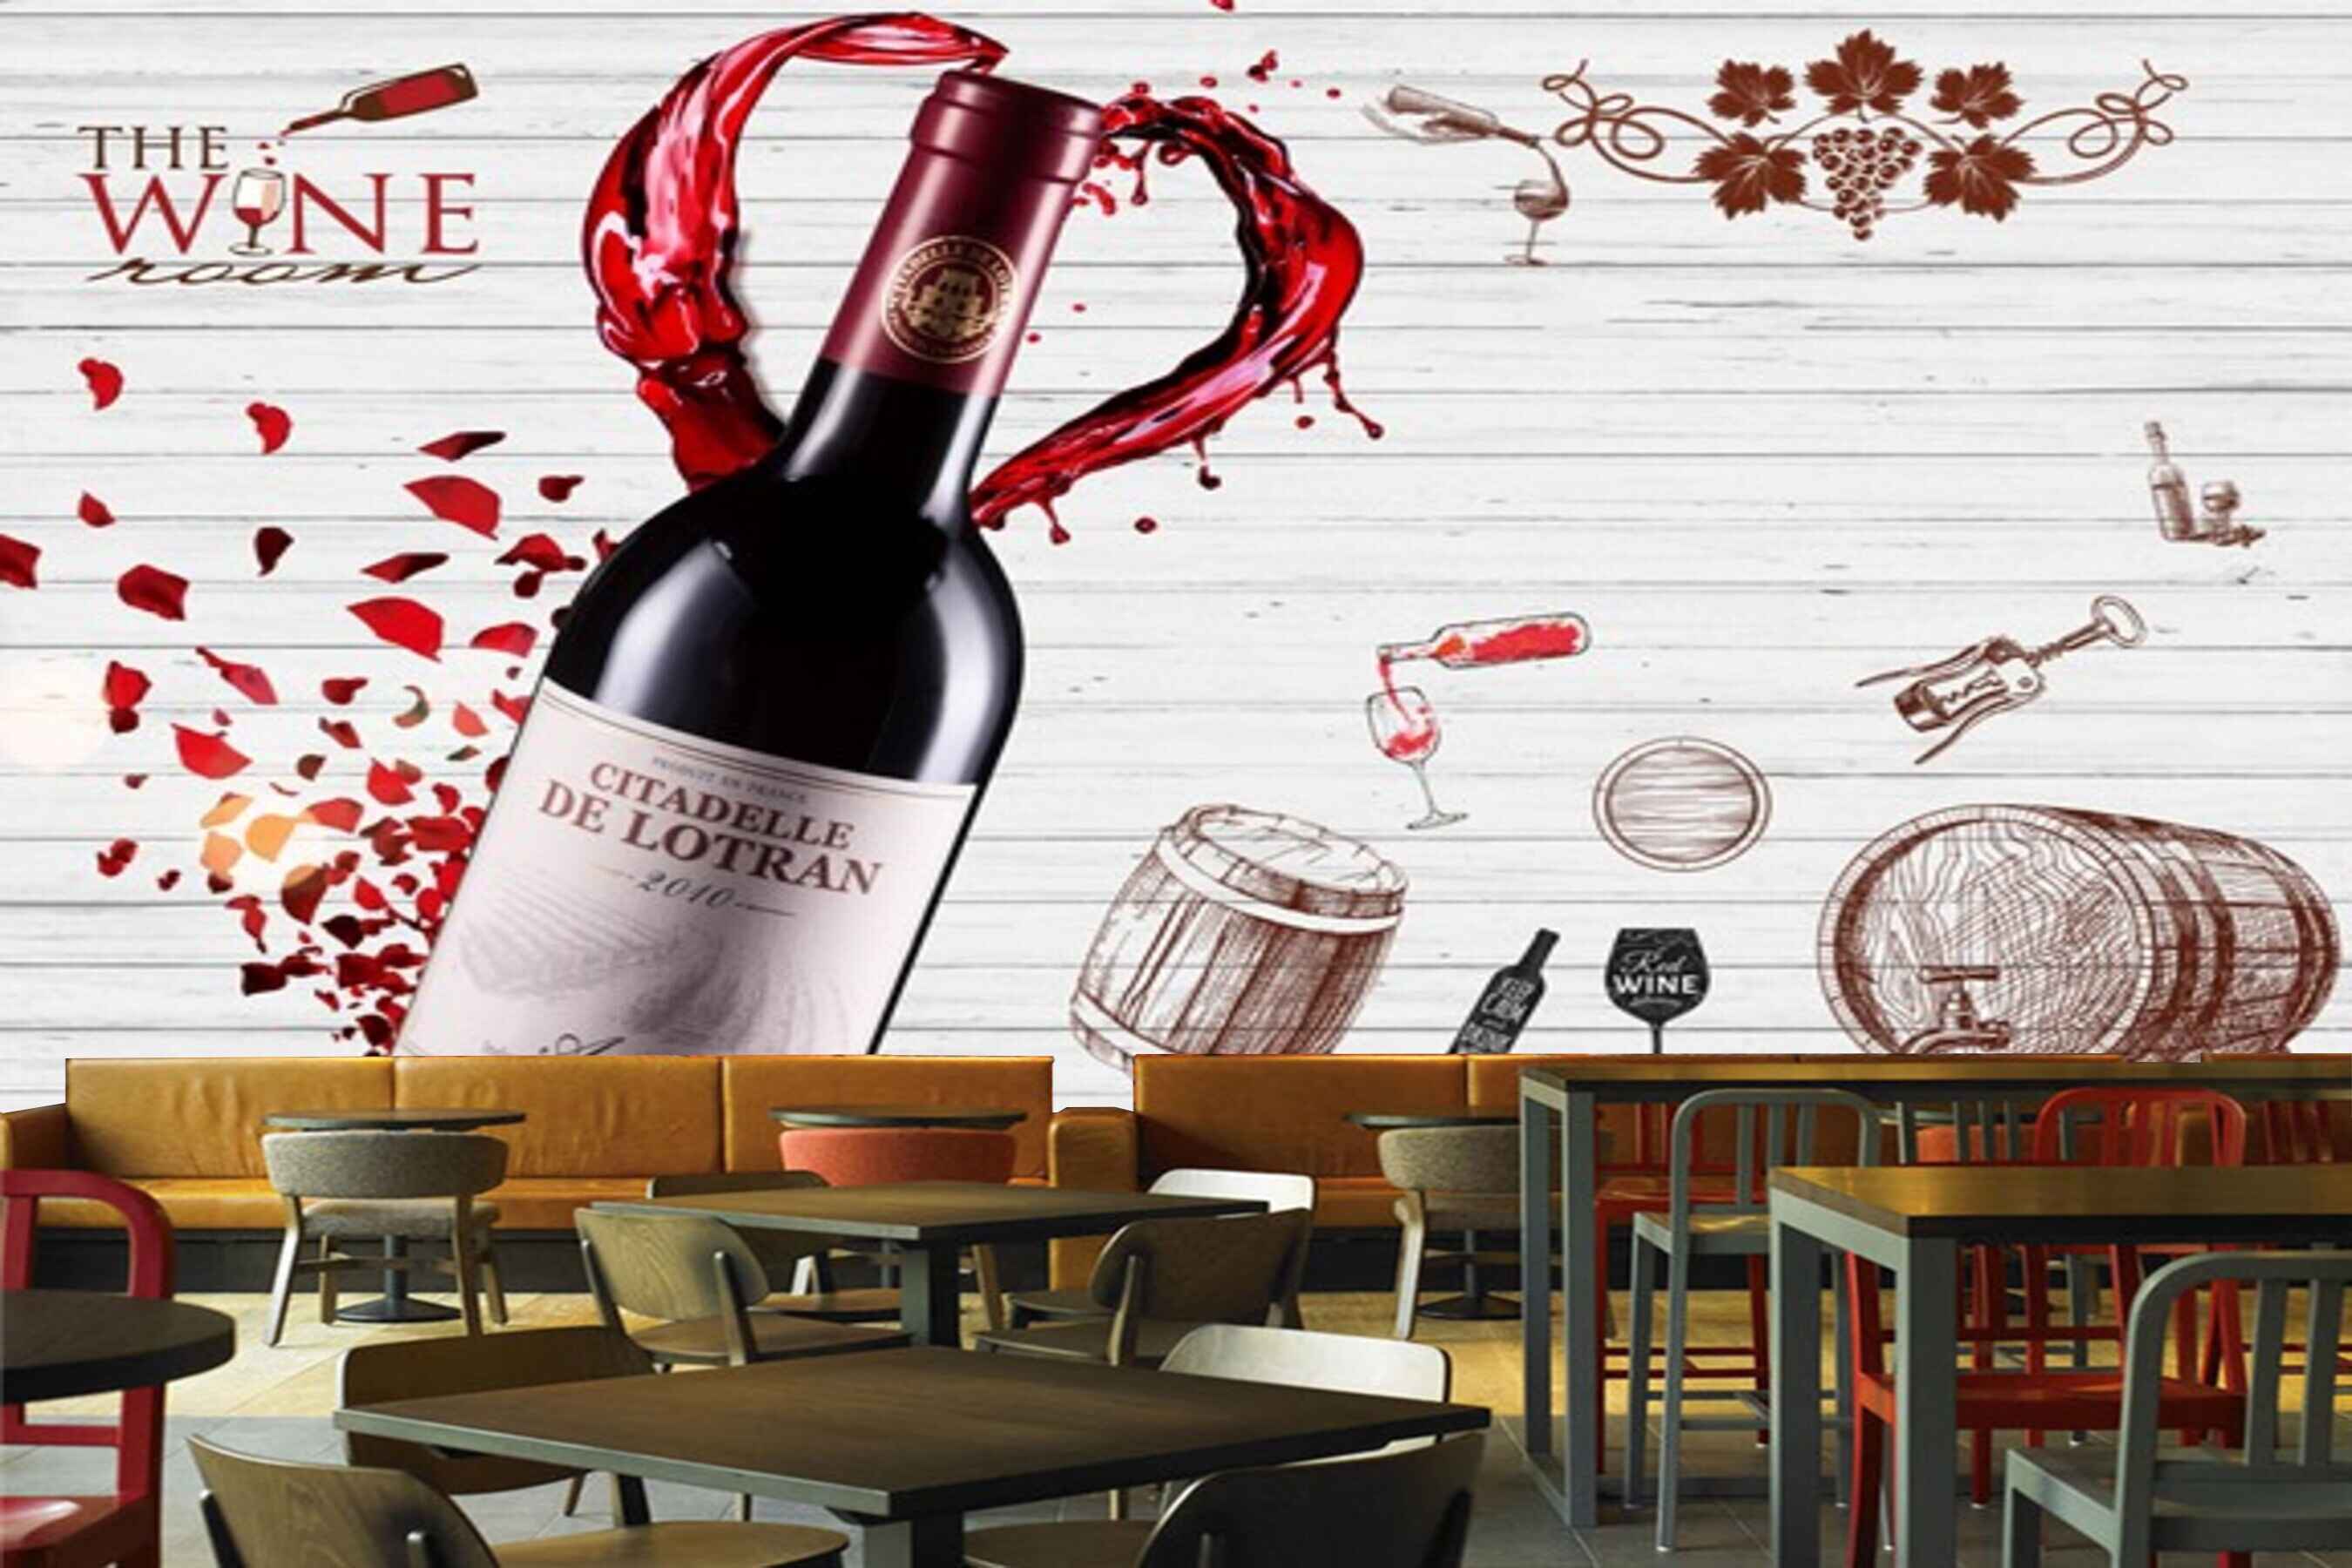 Avikalp MWZ3105 Wine Bottle Glasses HD Wallpaper for Cafe Restaurant